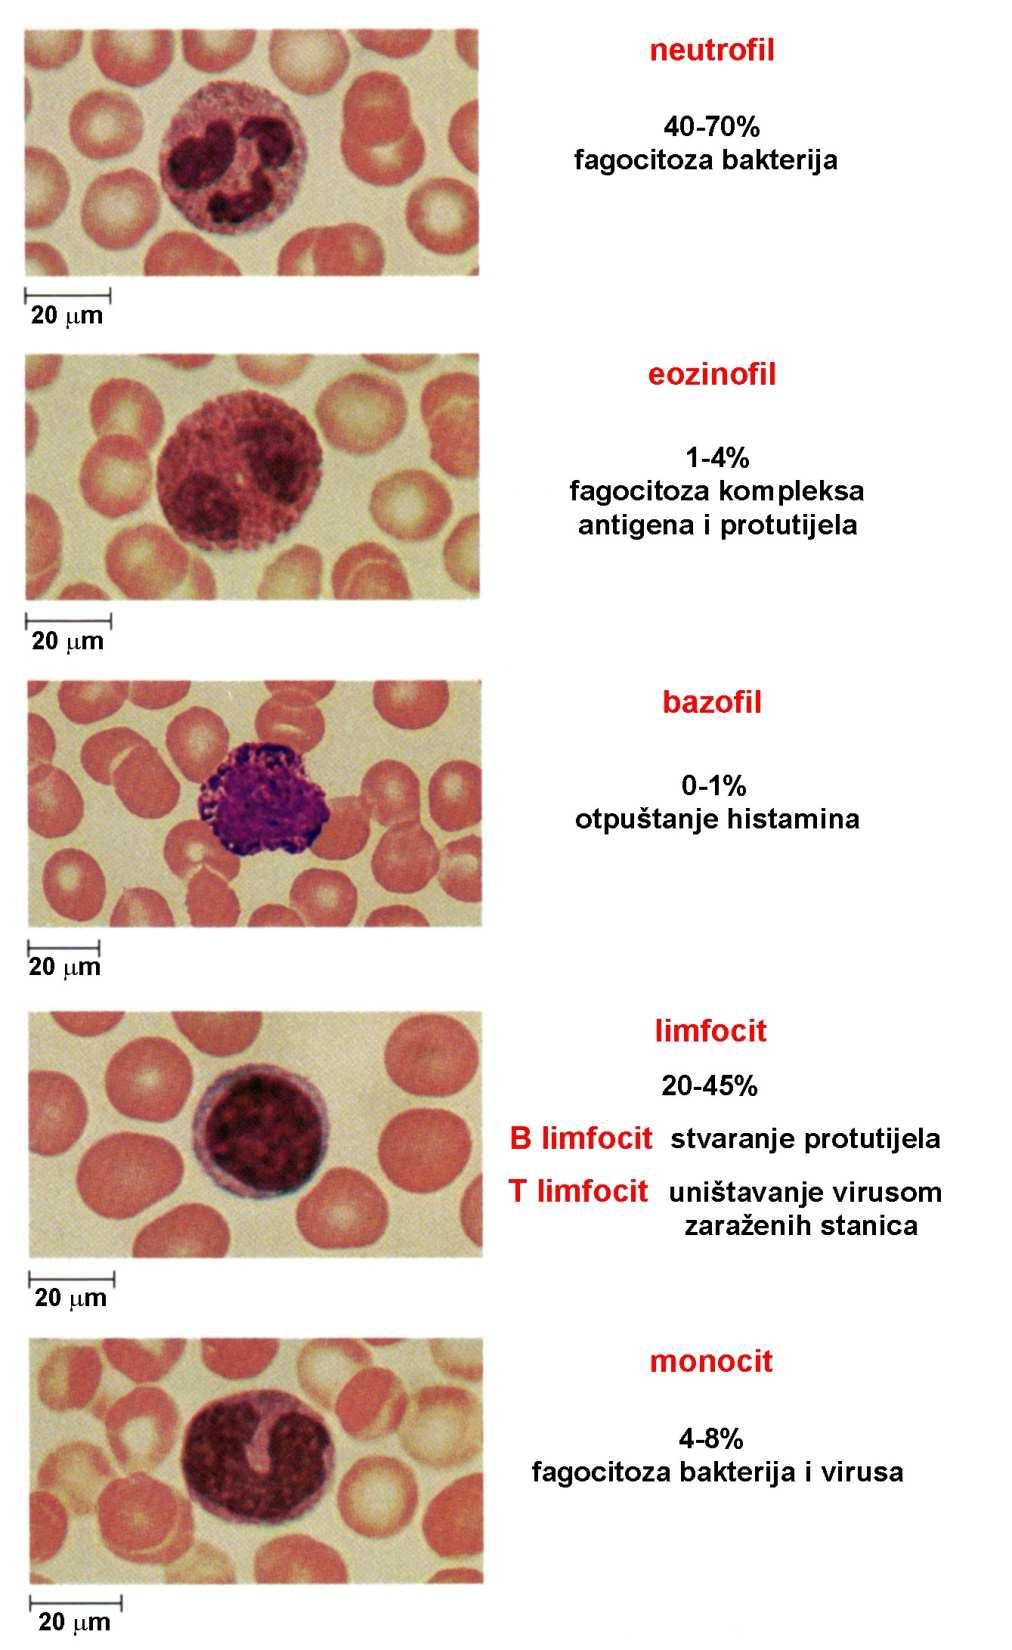 Stanice imunosnog sustava Leukociti stanice monociti makrofagi uloga preteče makrofaga fagocitiraju stanice uljeza; predočuju antigen pomoćničkim limfocitima T; fagocitiraju stanice obložene